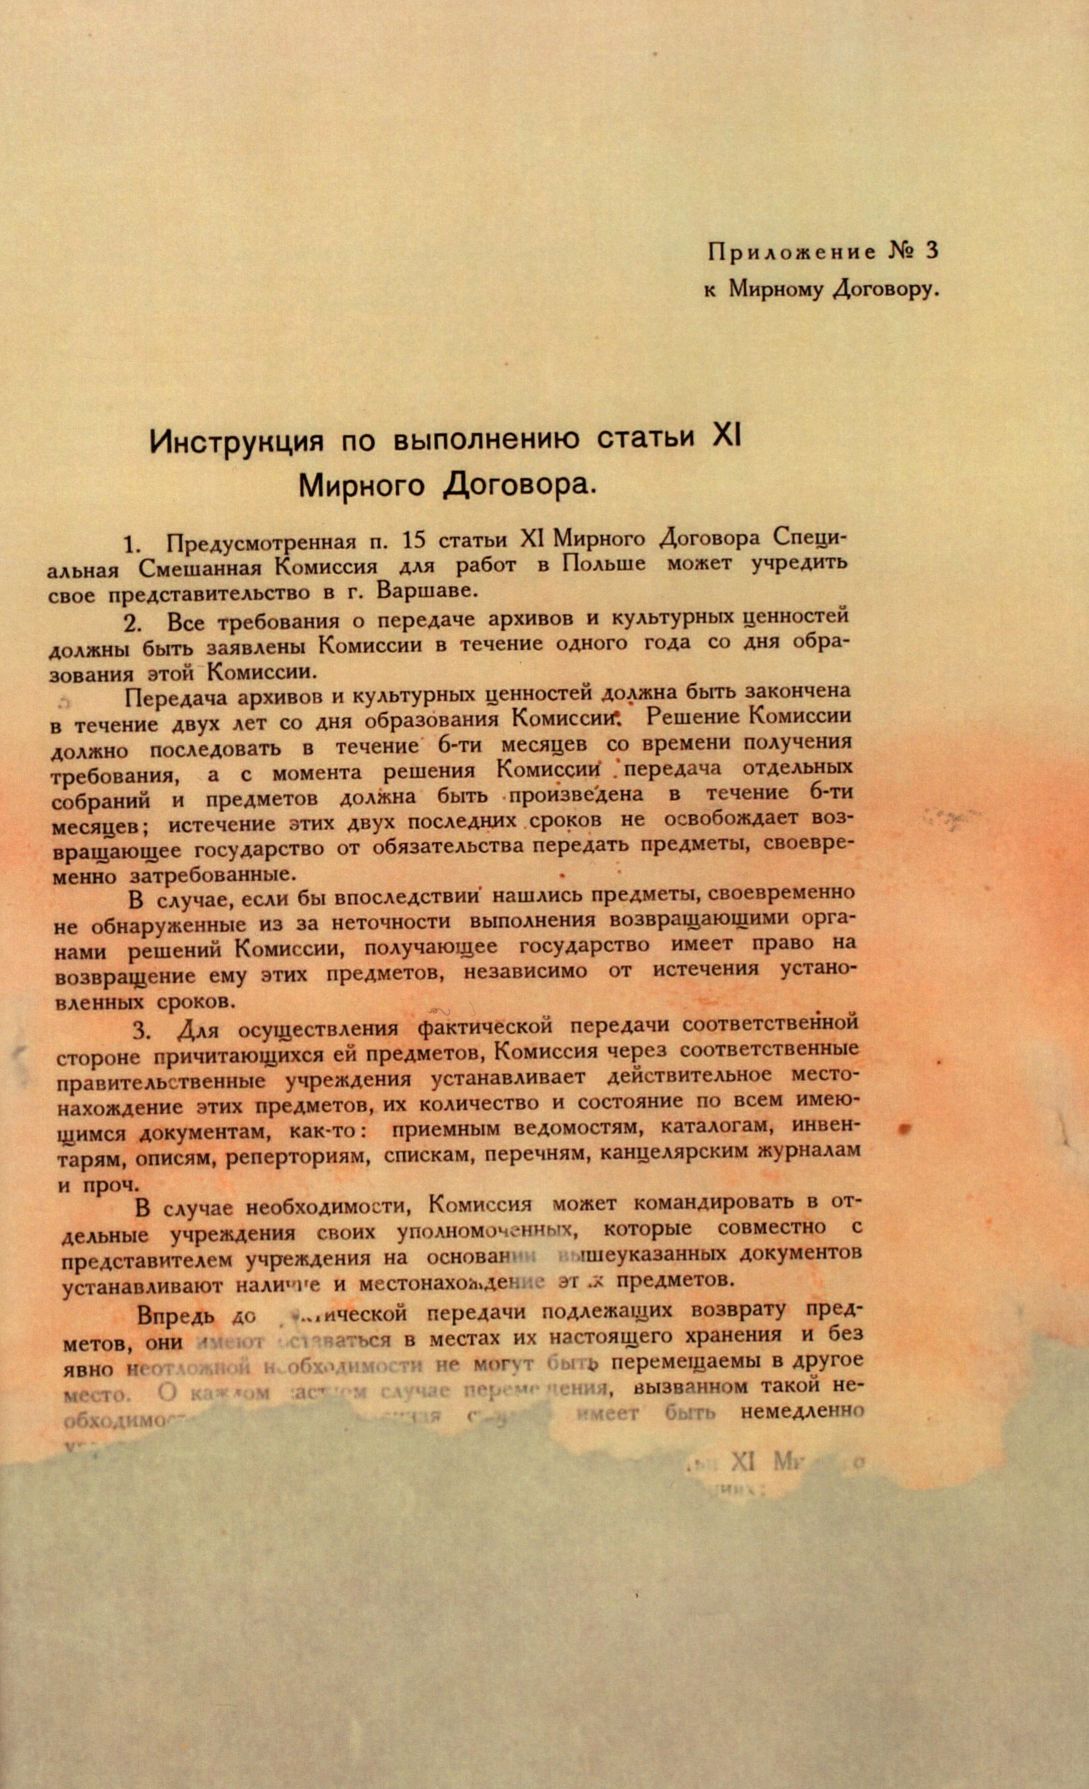 Traktat Pokoju między Polską a Rosją i Ukrainą podpisany w Rydze dnia 18 marca 1921 roku, s. 90, MSZ, sygn. 6739.